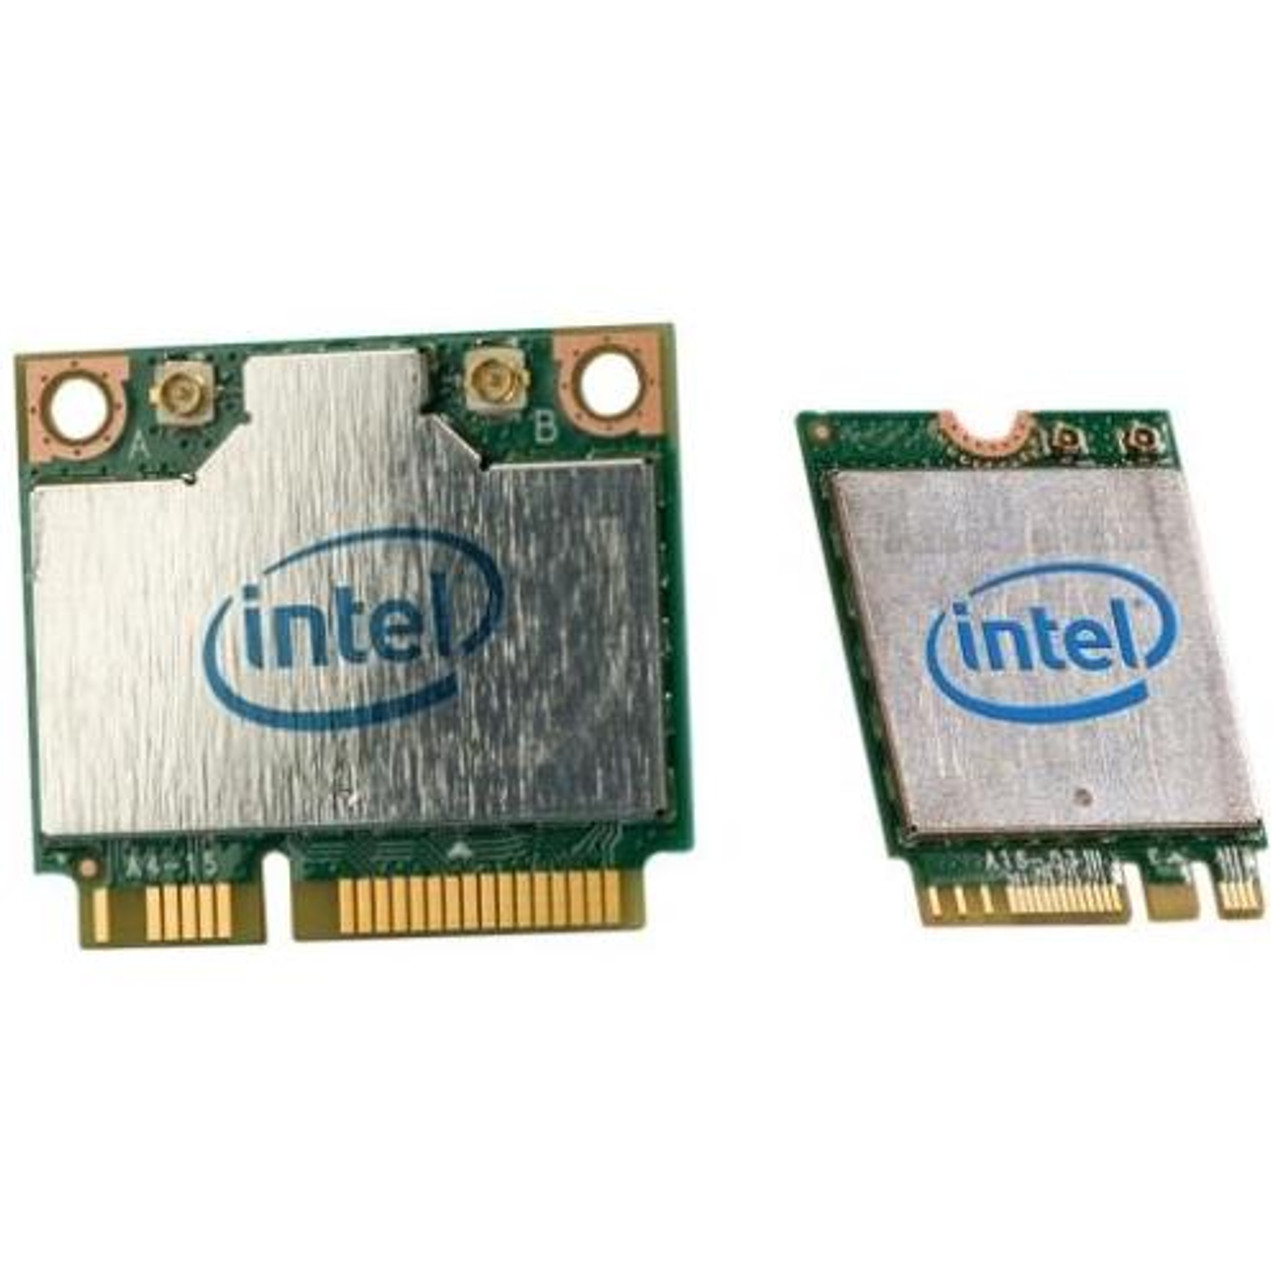 Интел вай. Intel n 7260. Intel Wireless-n 130. Интел адаптер Селексион. WIFI модуль для ноутбука 5 ГГЦ 802.11AC купить.